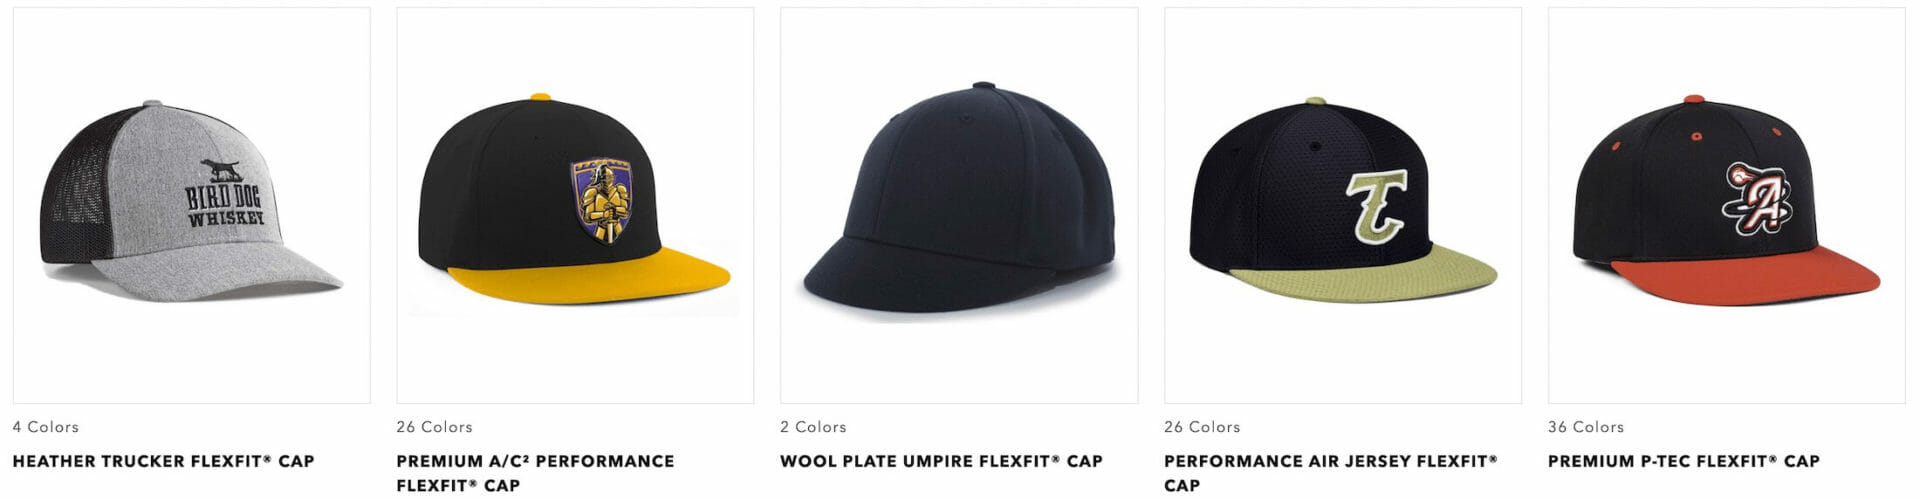 flexfit pacific headwear hats